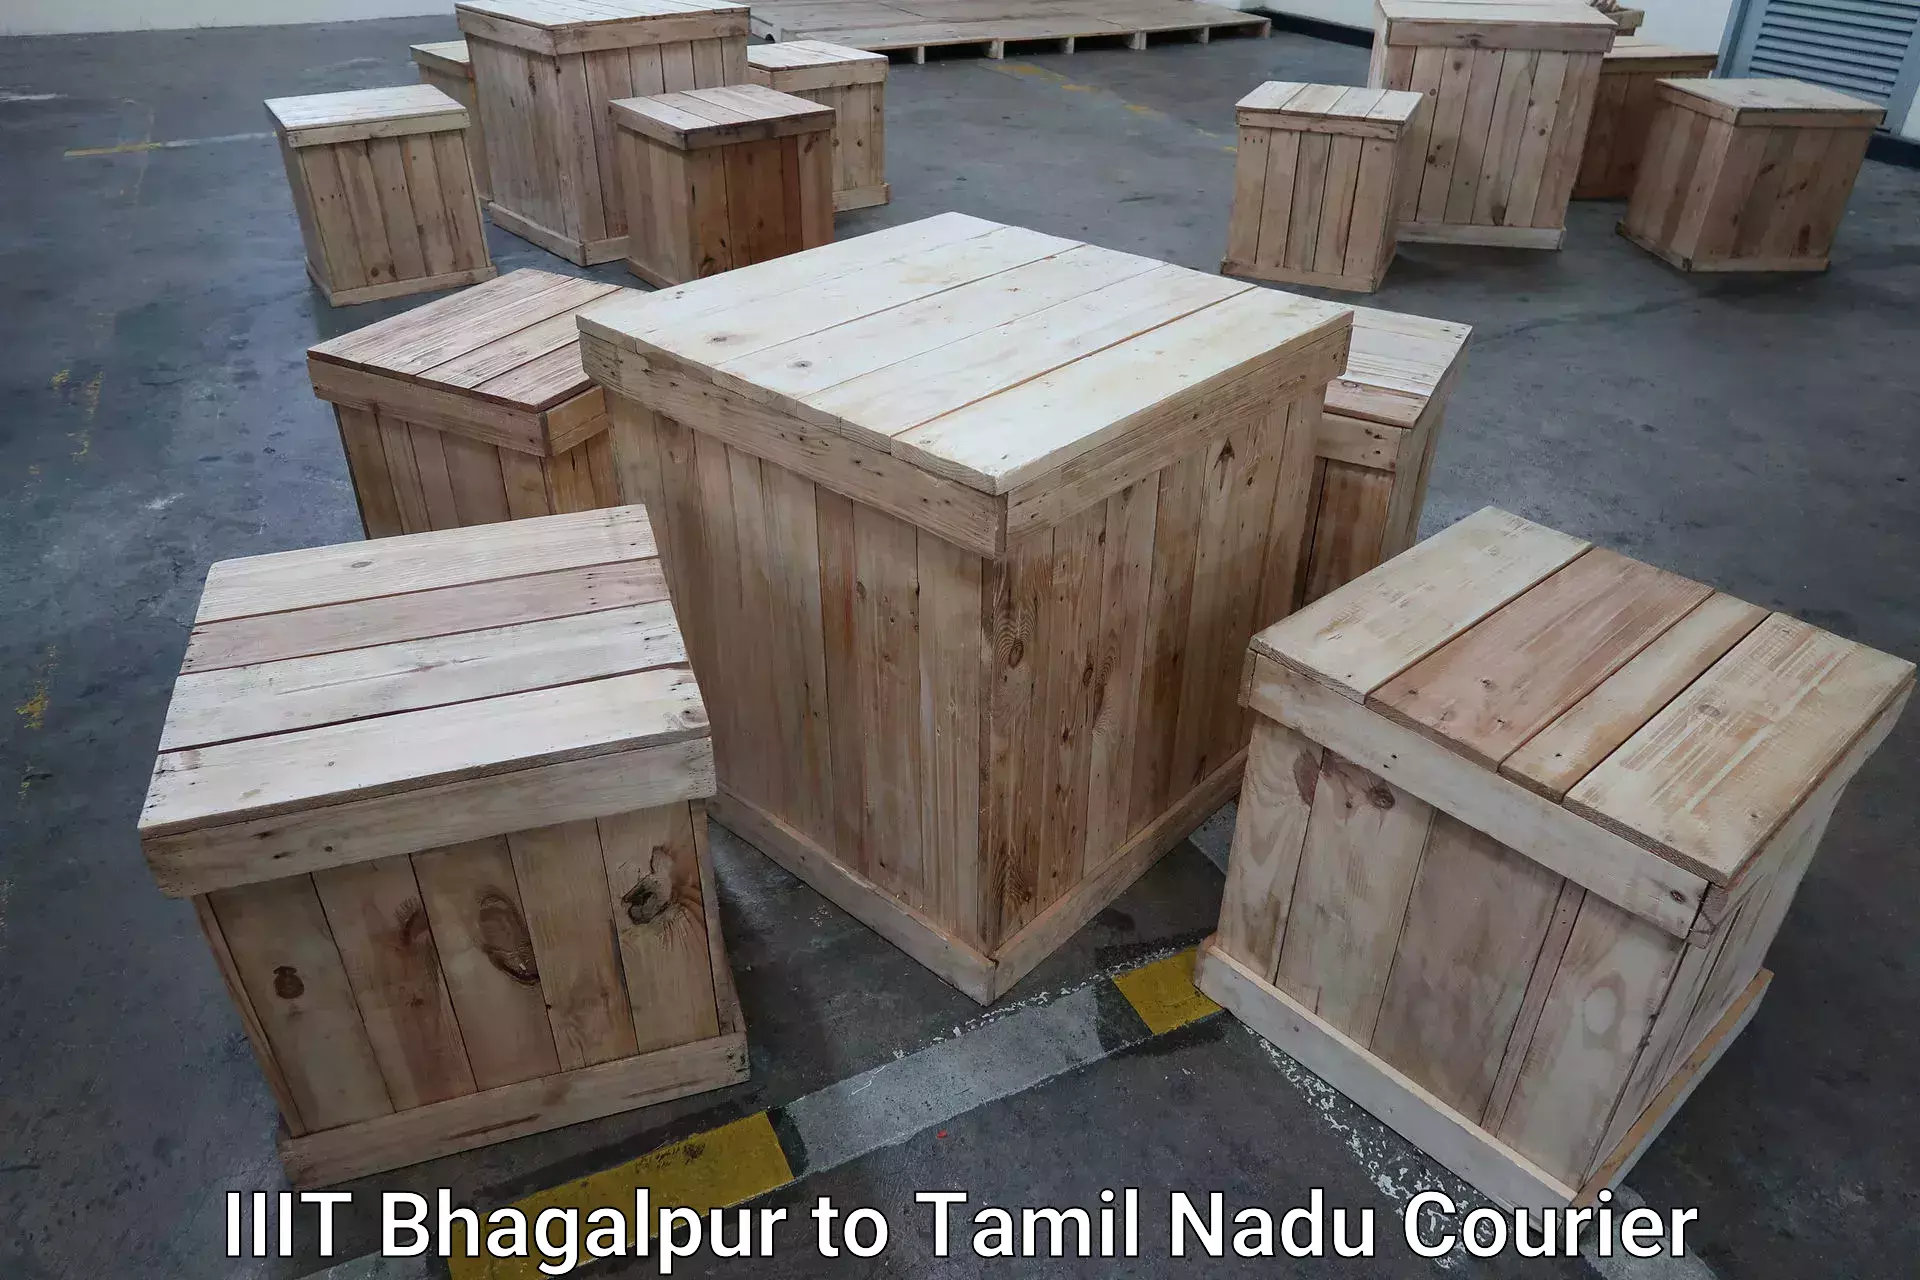 Luggage transport deals IIIT Bhagalpur to Orathanadu